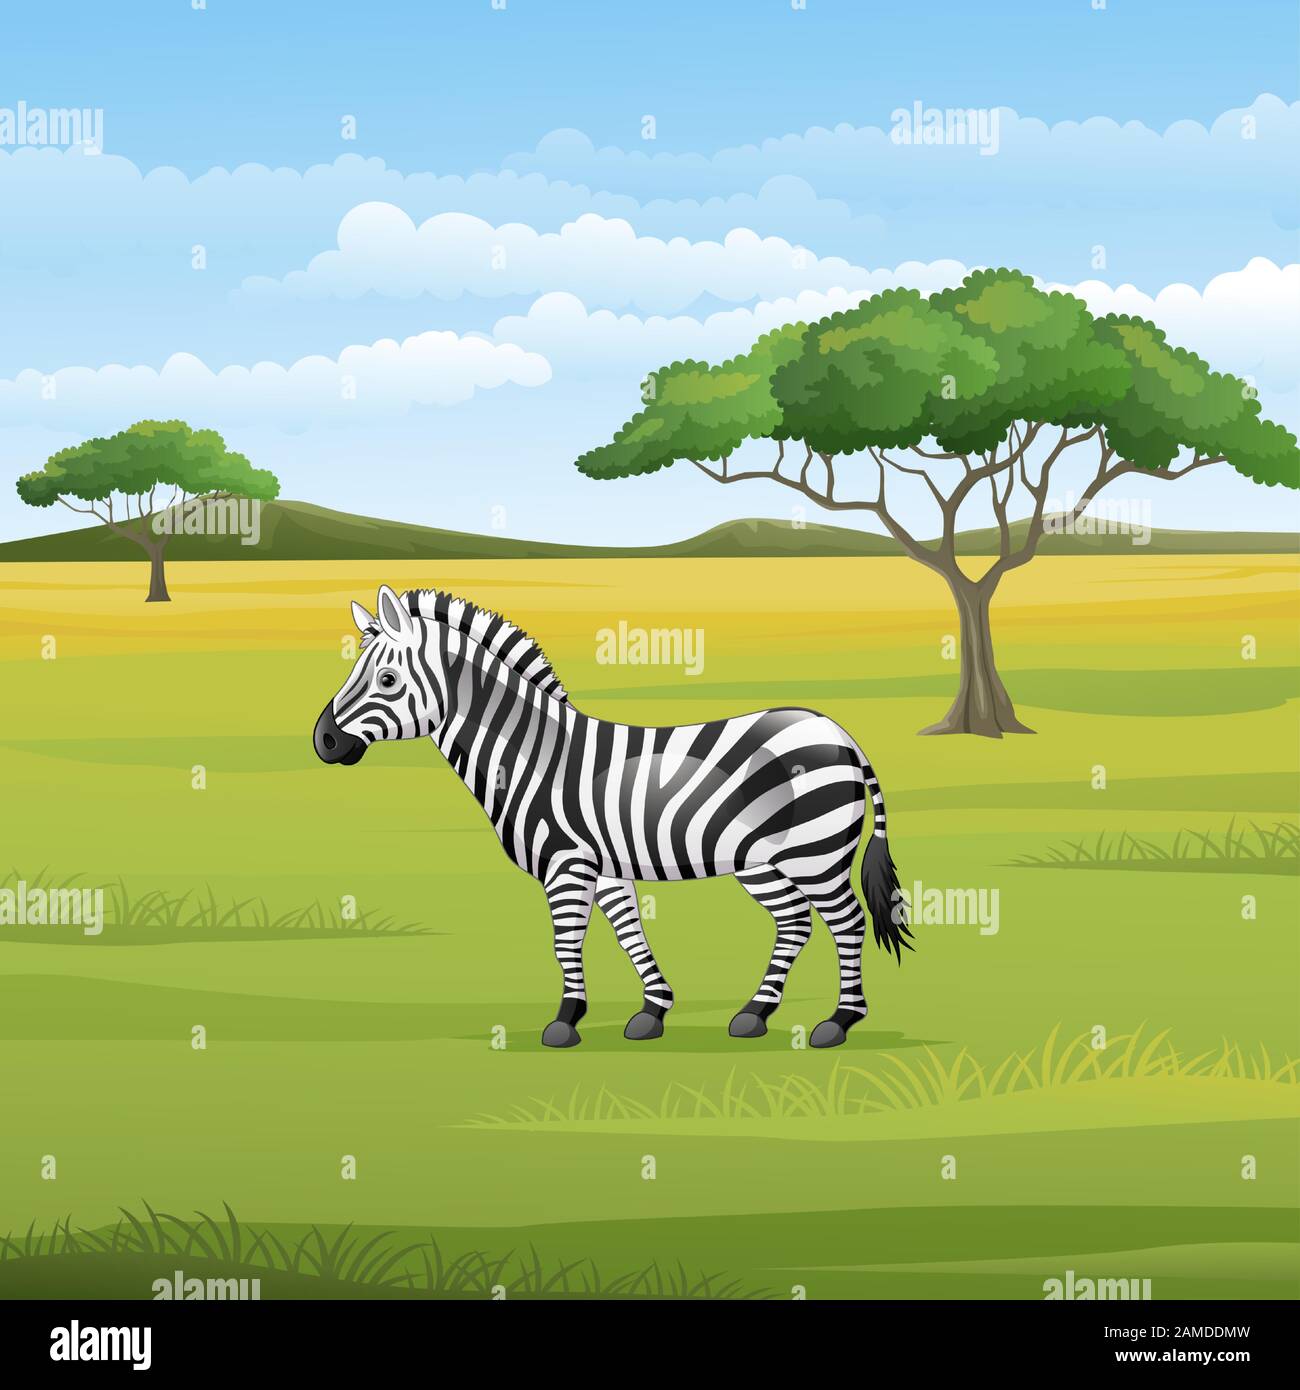 Cartoon zebra standing in the savannah Stock Vector